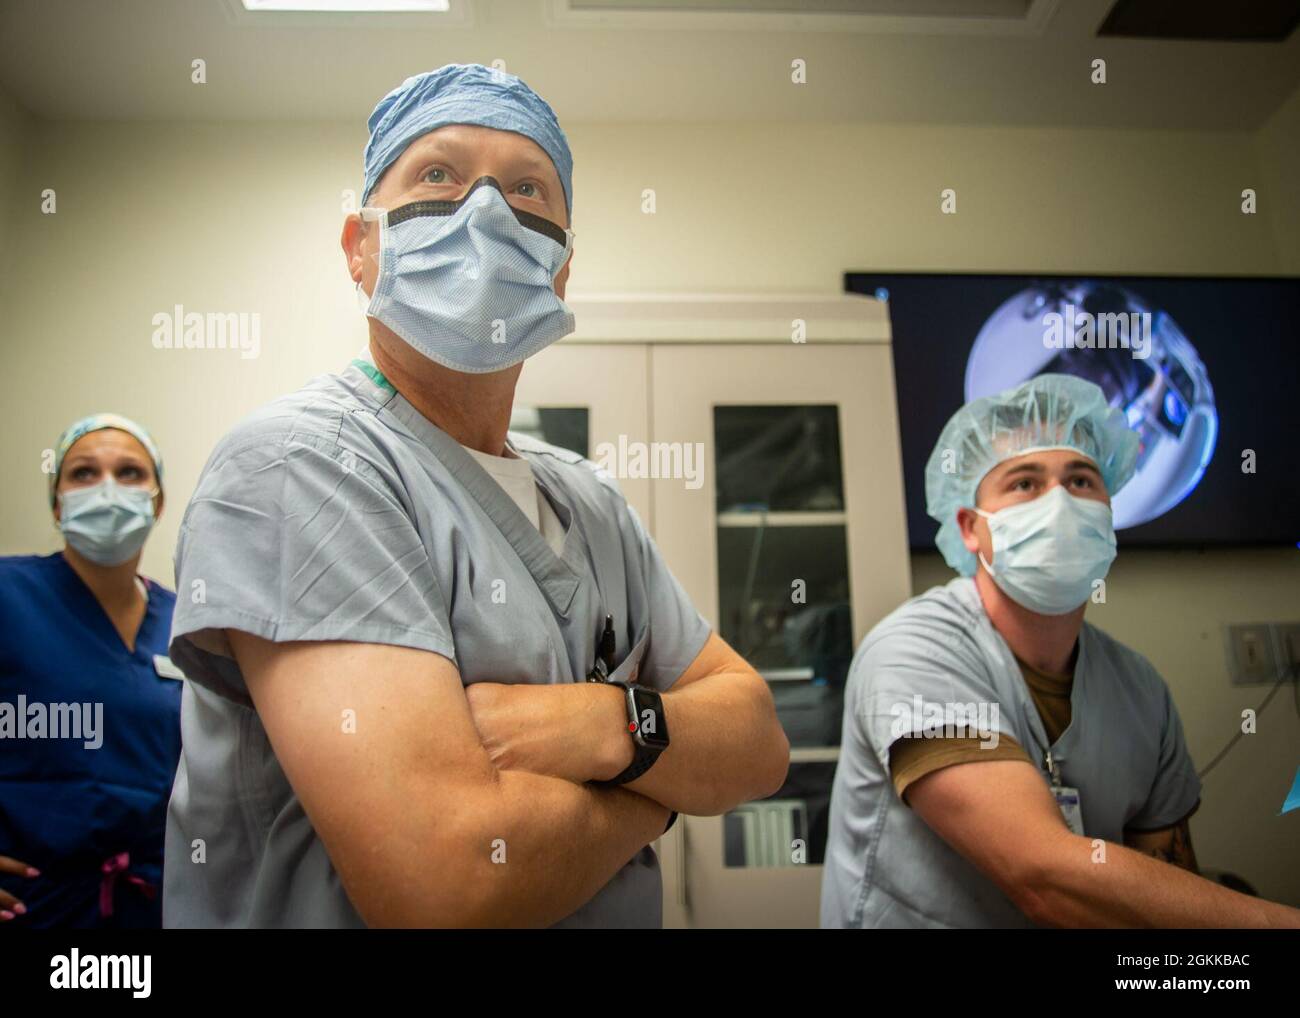 210514-N-DA693-1006 SAN DIEGO (14. Mai 2021) Kapt. Gordon Wisbach, Leiter des Naval Medical Center San Diego (NMCSD) Bio-Skills Training and Simulation Center, OP-Direktor und einer der ranghöchsten Chirurgen des Virtual Medical Operation Center (VMOC), Bereitet die Geräte in einem der Operationssäle des Krankenhauses vor einer chirurgischen Telementoring-Sitzung am 14. Mai vor. Bei der chirurgischen Telementoring wird eine Videokonferenz zwischen einem Mentor, einem leitenderen Chirurgen oder Spezialisten und einem Mentee, in der Regel einem Junior-Anbieter, vor oder während eines Eingriffs durchgeführt, um Wissen und Anleitung auszutauschen. NMCS Stockfoto